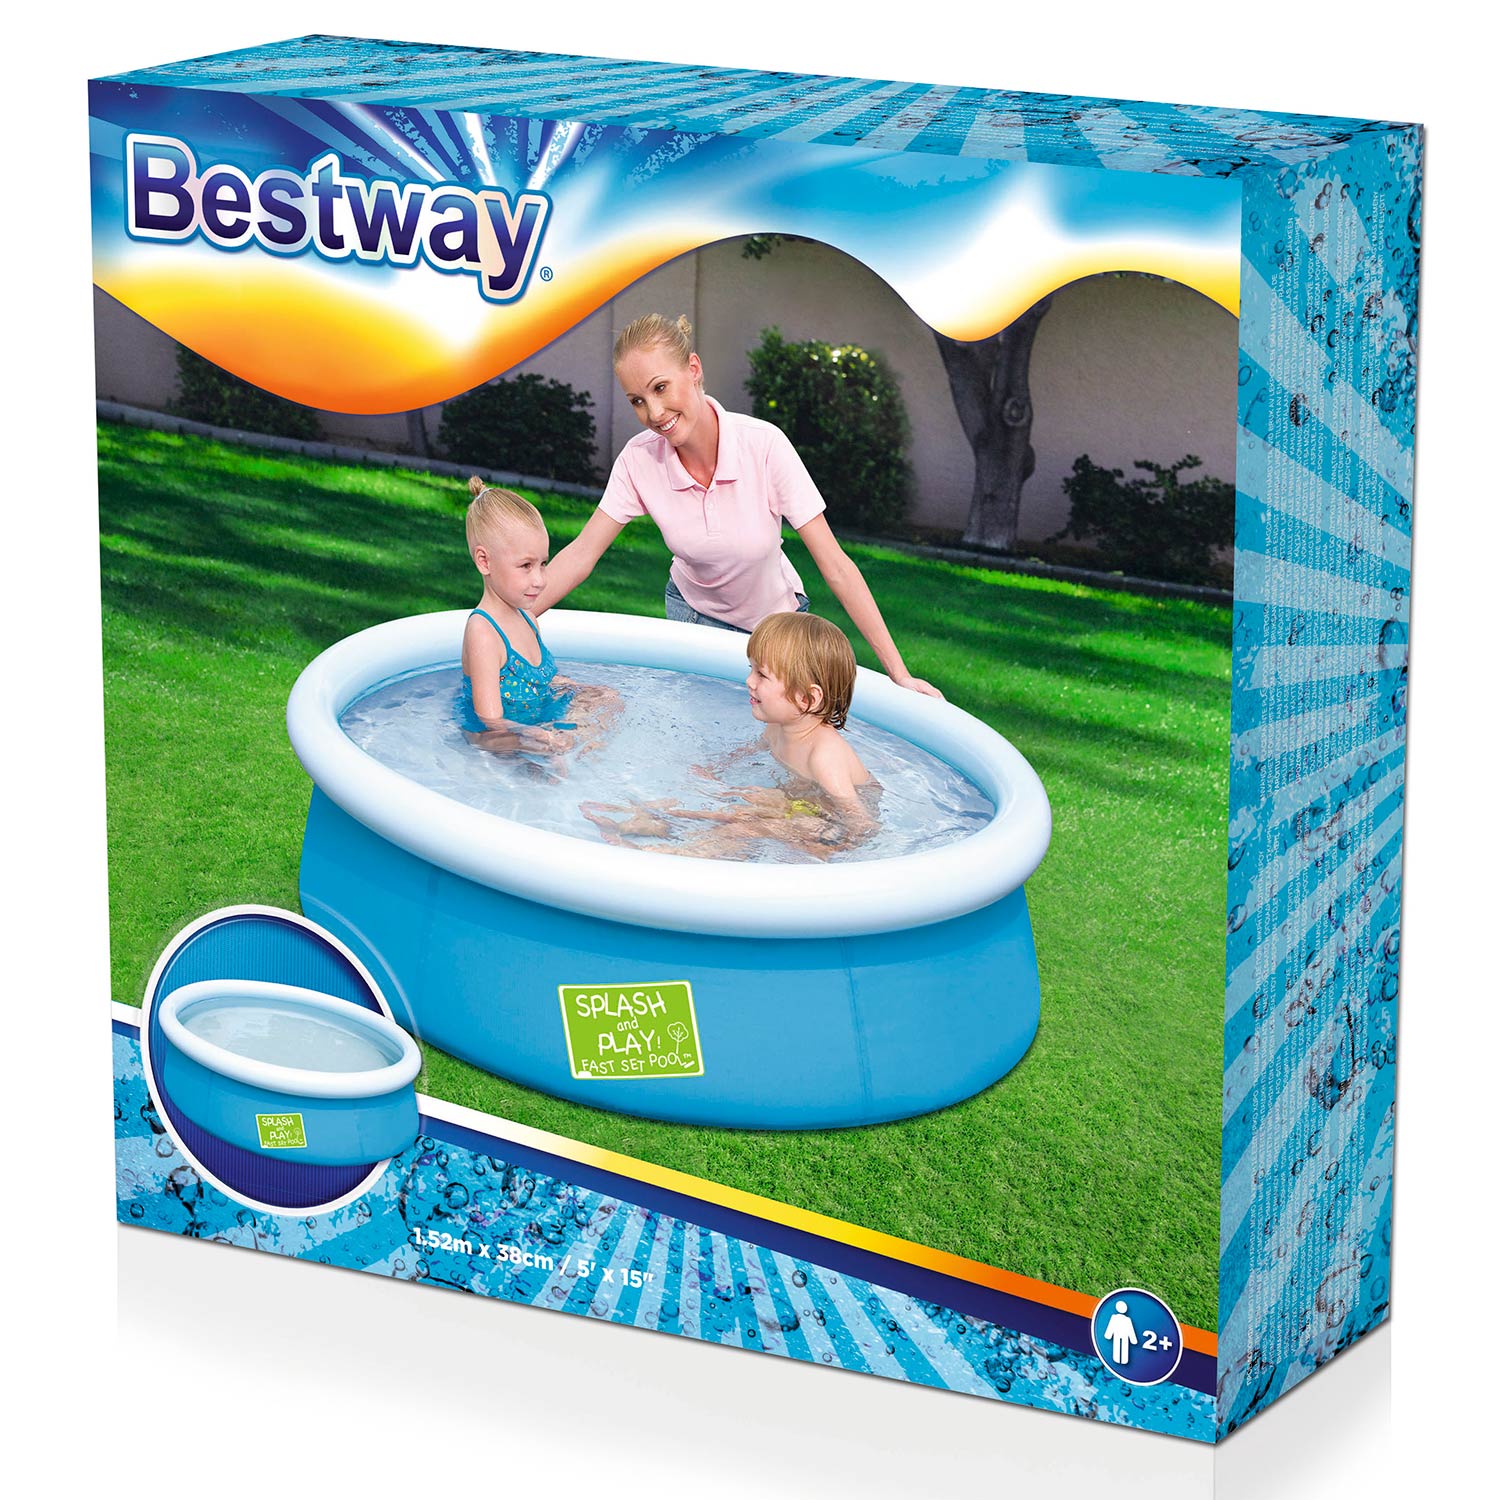 Bestway-Schwimmbecken mit aufblasbarem Rand, 152 cm